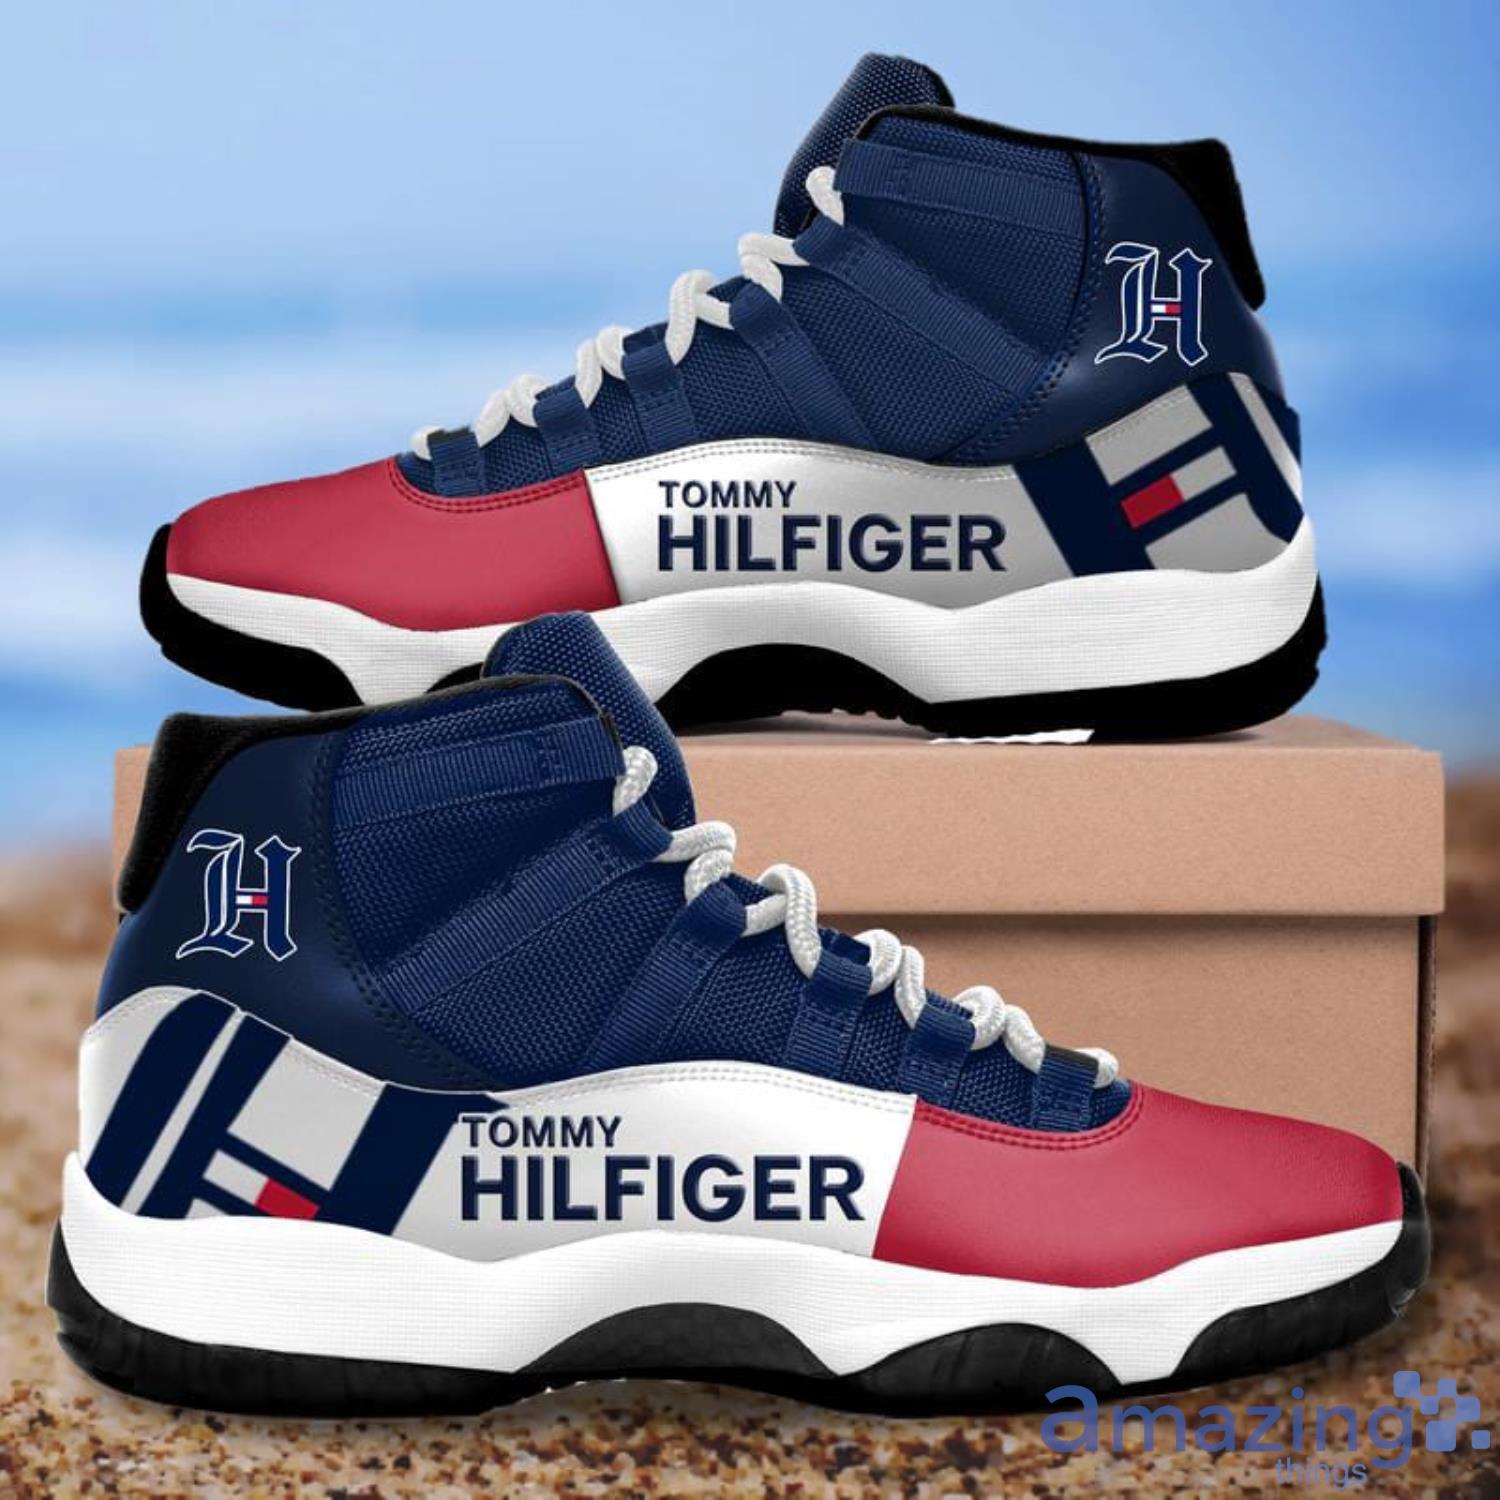 Tommy Hilfiger Air Jordan Shoes 11 Fans For Sport Shoes